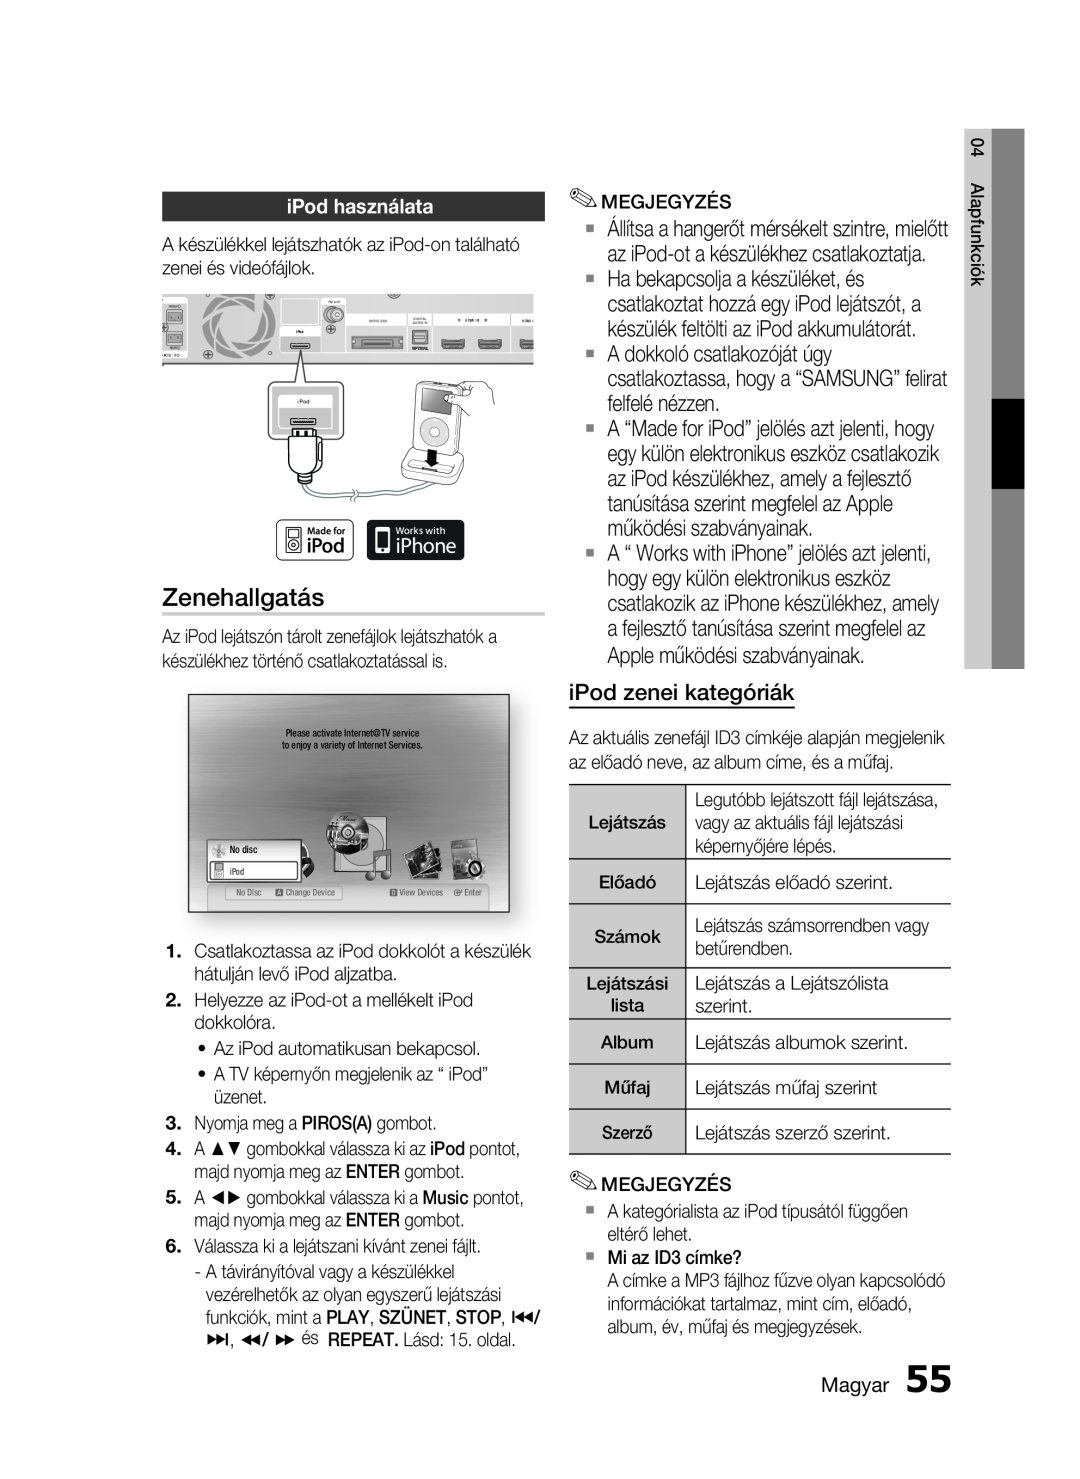 Samsung HT-C5900/XEE, HT-C5900/XEF manual Zenehallgatás, iPod zenei kategóriák, iPod használata, Magyar 